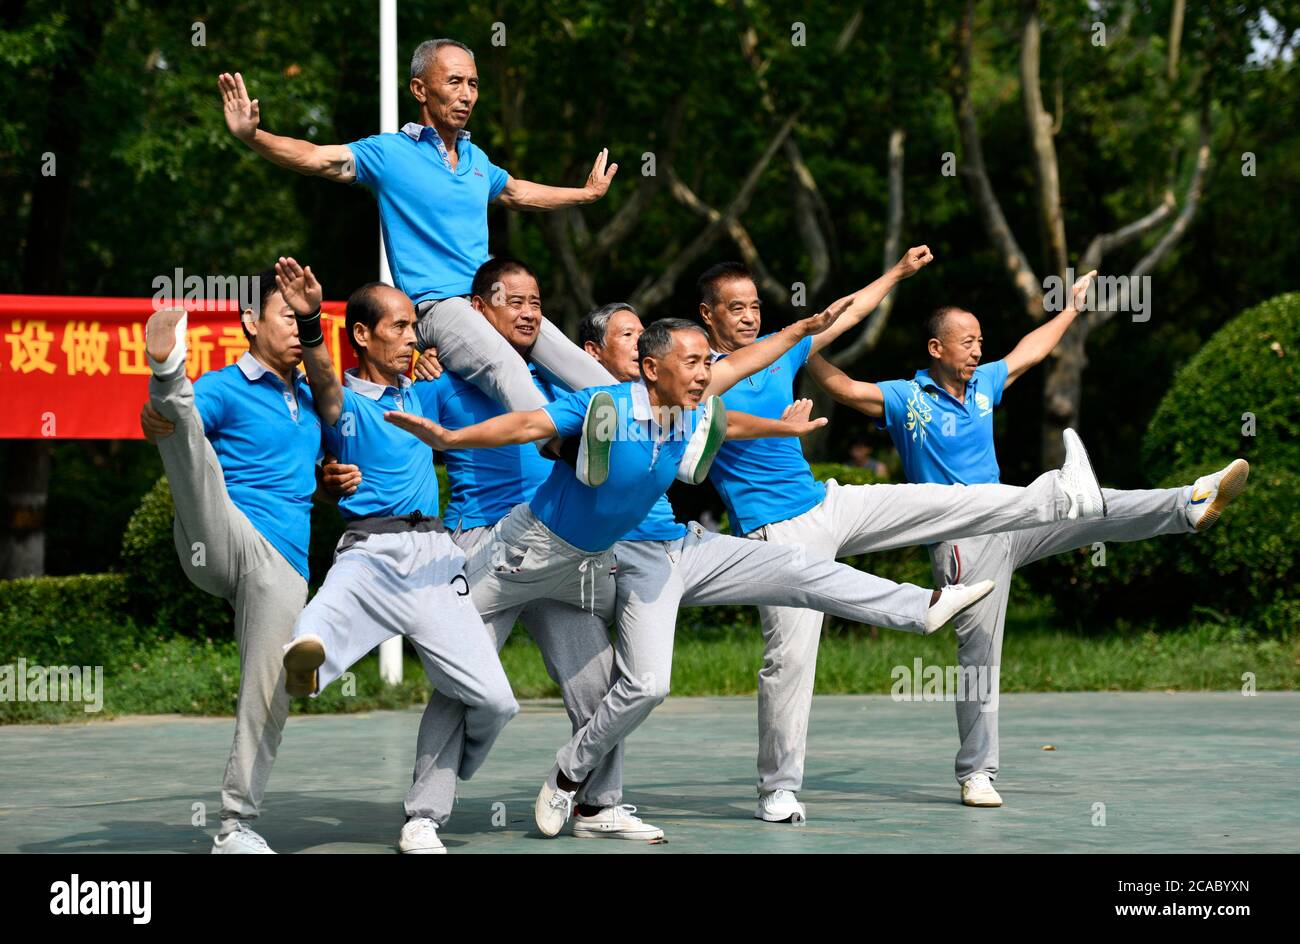 (200806) -- TIANJIN, le 6 août 2020 (Xinhua) -- des membres de l'équipe de gymnastique âgée posent pour des photos dans le parc Xigu, dans le nord de la Chine, Tianjin, le 1er août 2020. Un groupe de personnes âgées a formé une équipe de gymnastique à Tianjin il y a dix ans. Ils ont pratiqué régulièrement comme exercice physique quotidien. L'équipe compte maintenant plus de 20 membres, avec une moyenne d'âge de 68 ans. « l'exercice nous permet de maintenir un bon état physique, ce qui est très utile pour améliorer la qualité de vie. » a déclaré Tong Yugen, le chef d'équipe âgé de 66 ans. À mesure que l'équipe devient plus connue, plus de 100 amateurs de fitness les ont rejoints dans l'exercice ev Banque D'Images